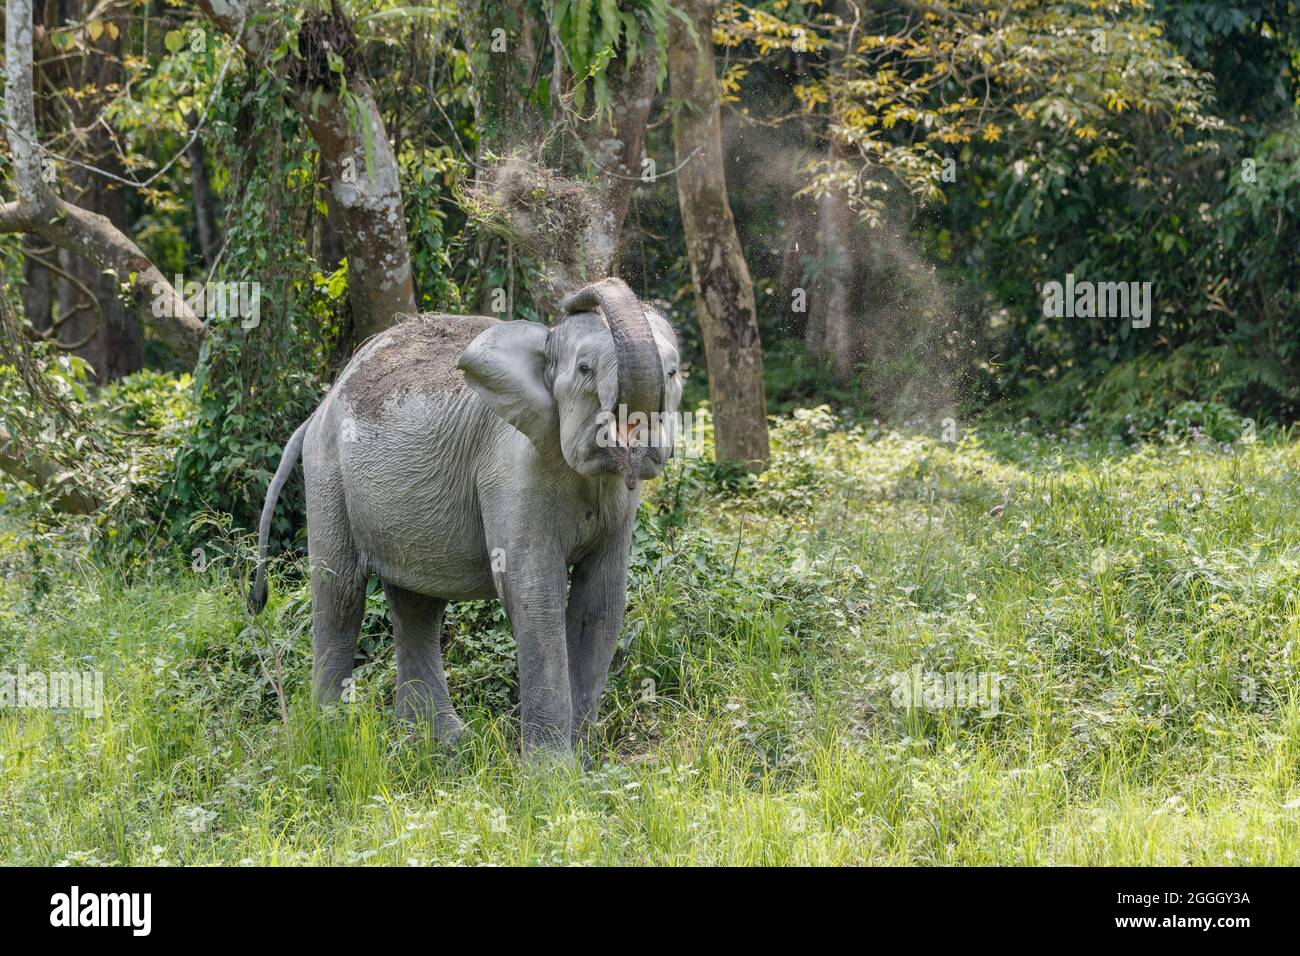 Asian elephant (Elephas maximus), dusting body. Kaziranga National Park, India Stock Photo